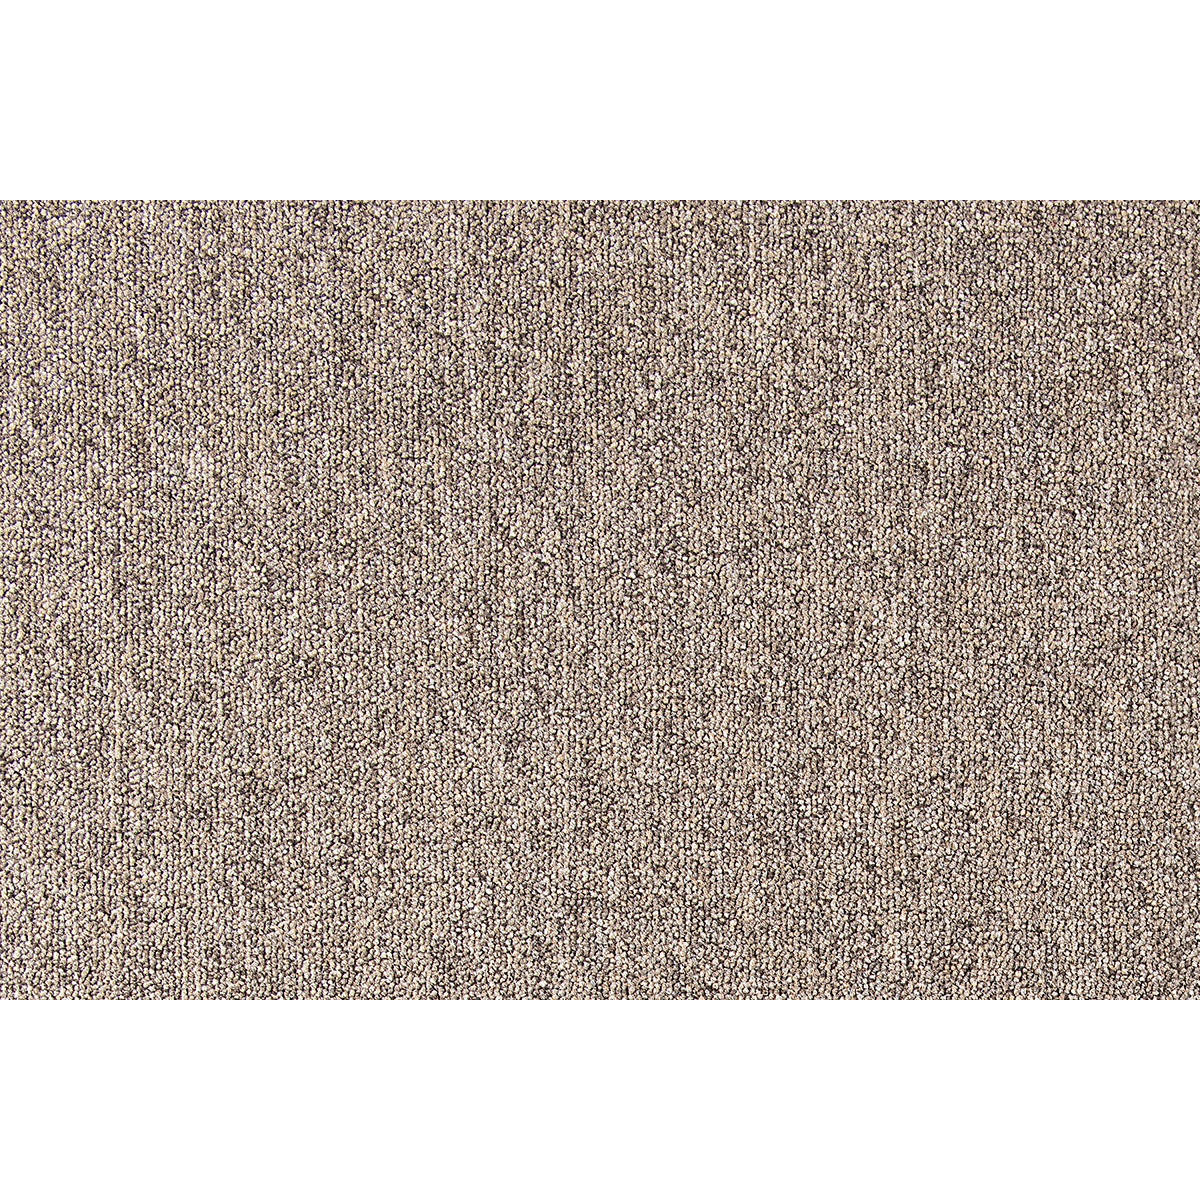 Metrážový koberec Cobalt SDN 64031- AB béžovo-hnědý, zátěžový